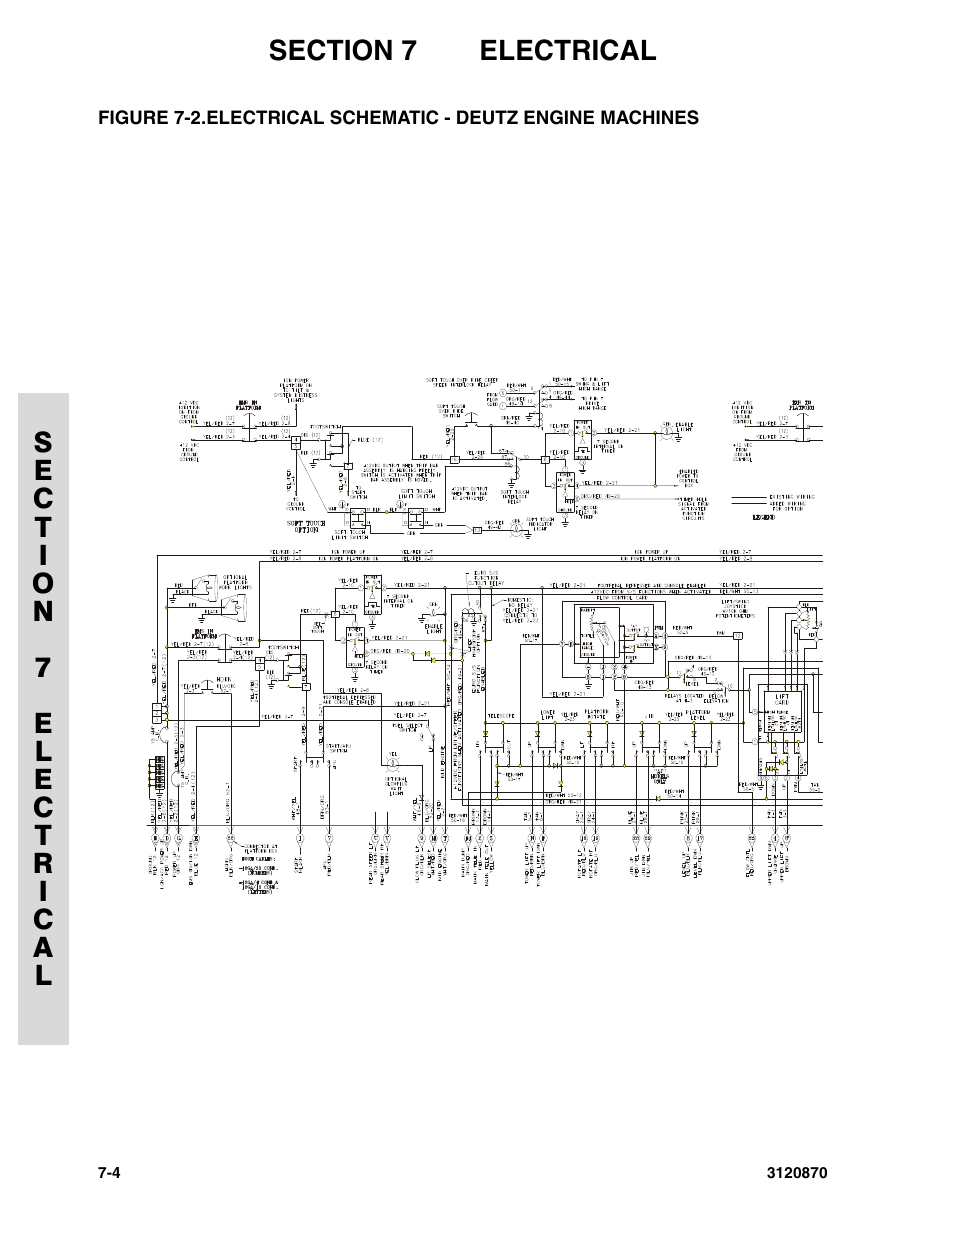 Electrical schematic - deutz engine machines -4 | JLG 450AJ Parts